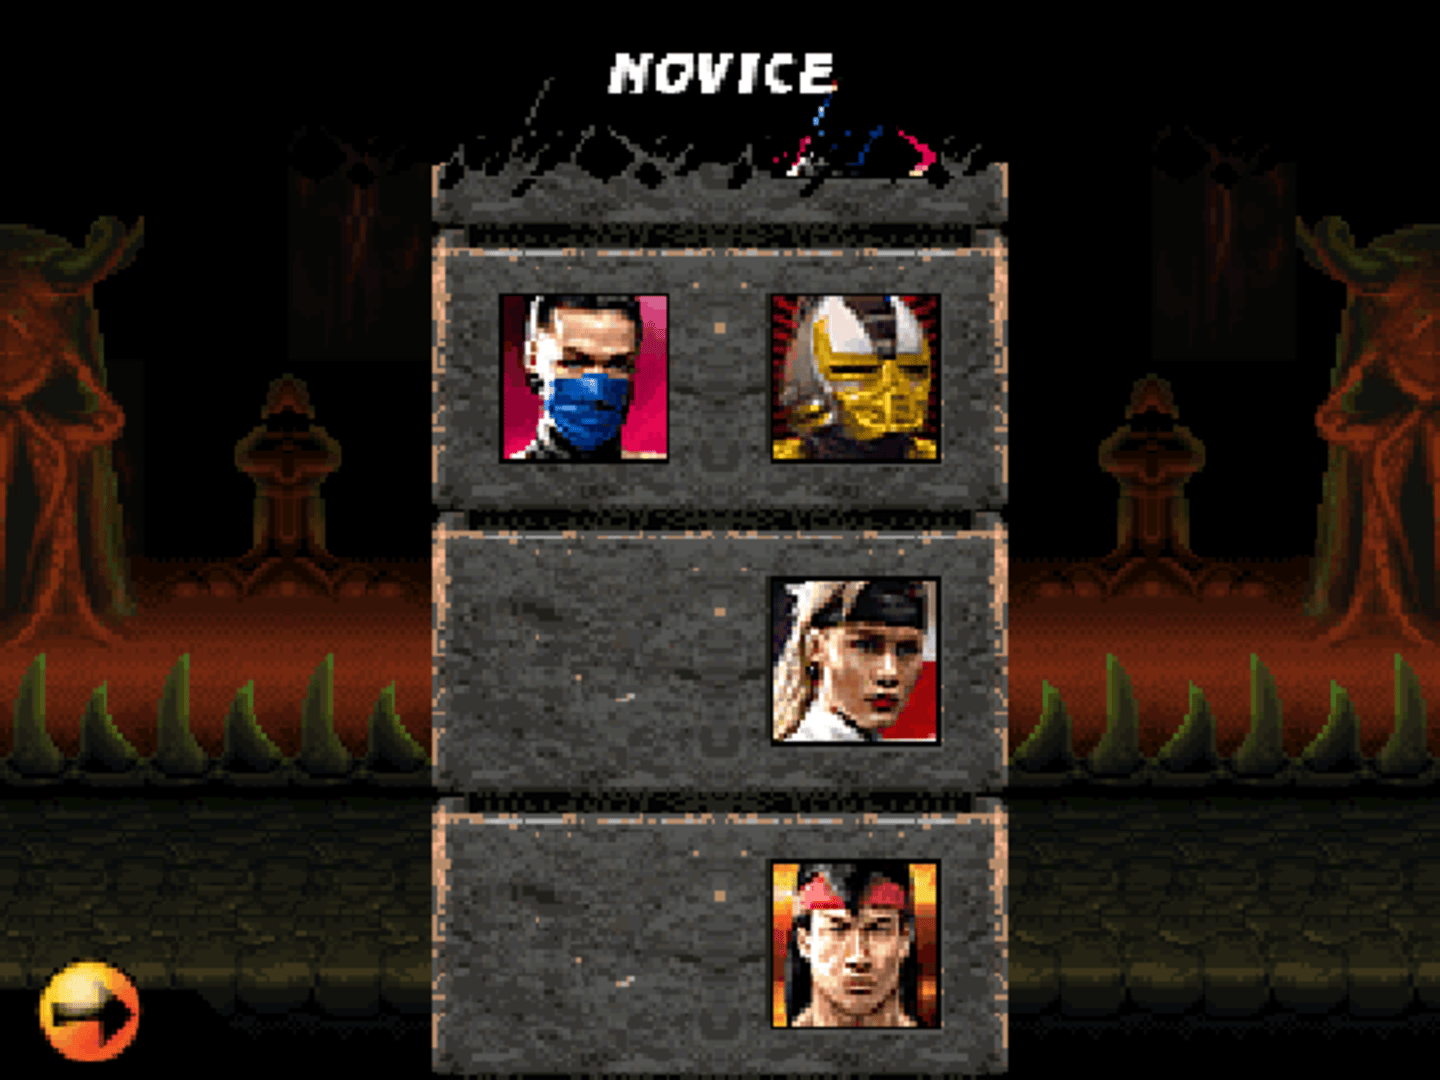 Ultimate Mortal Kombat 3 screenshot